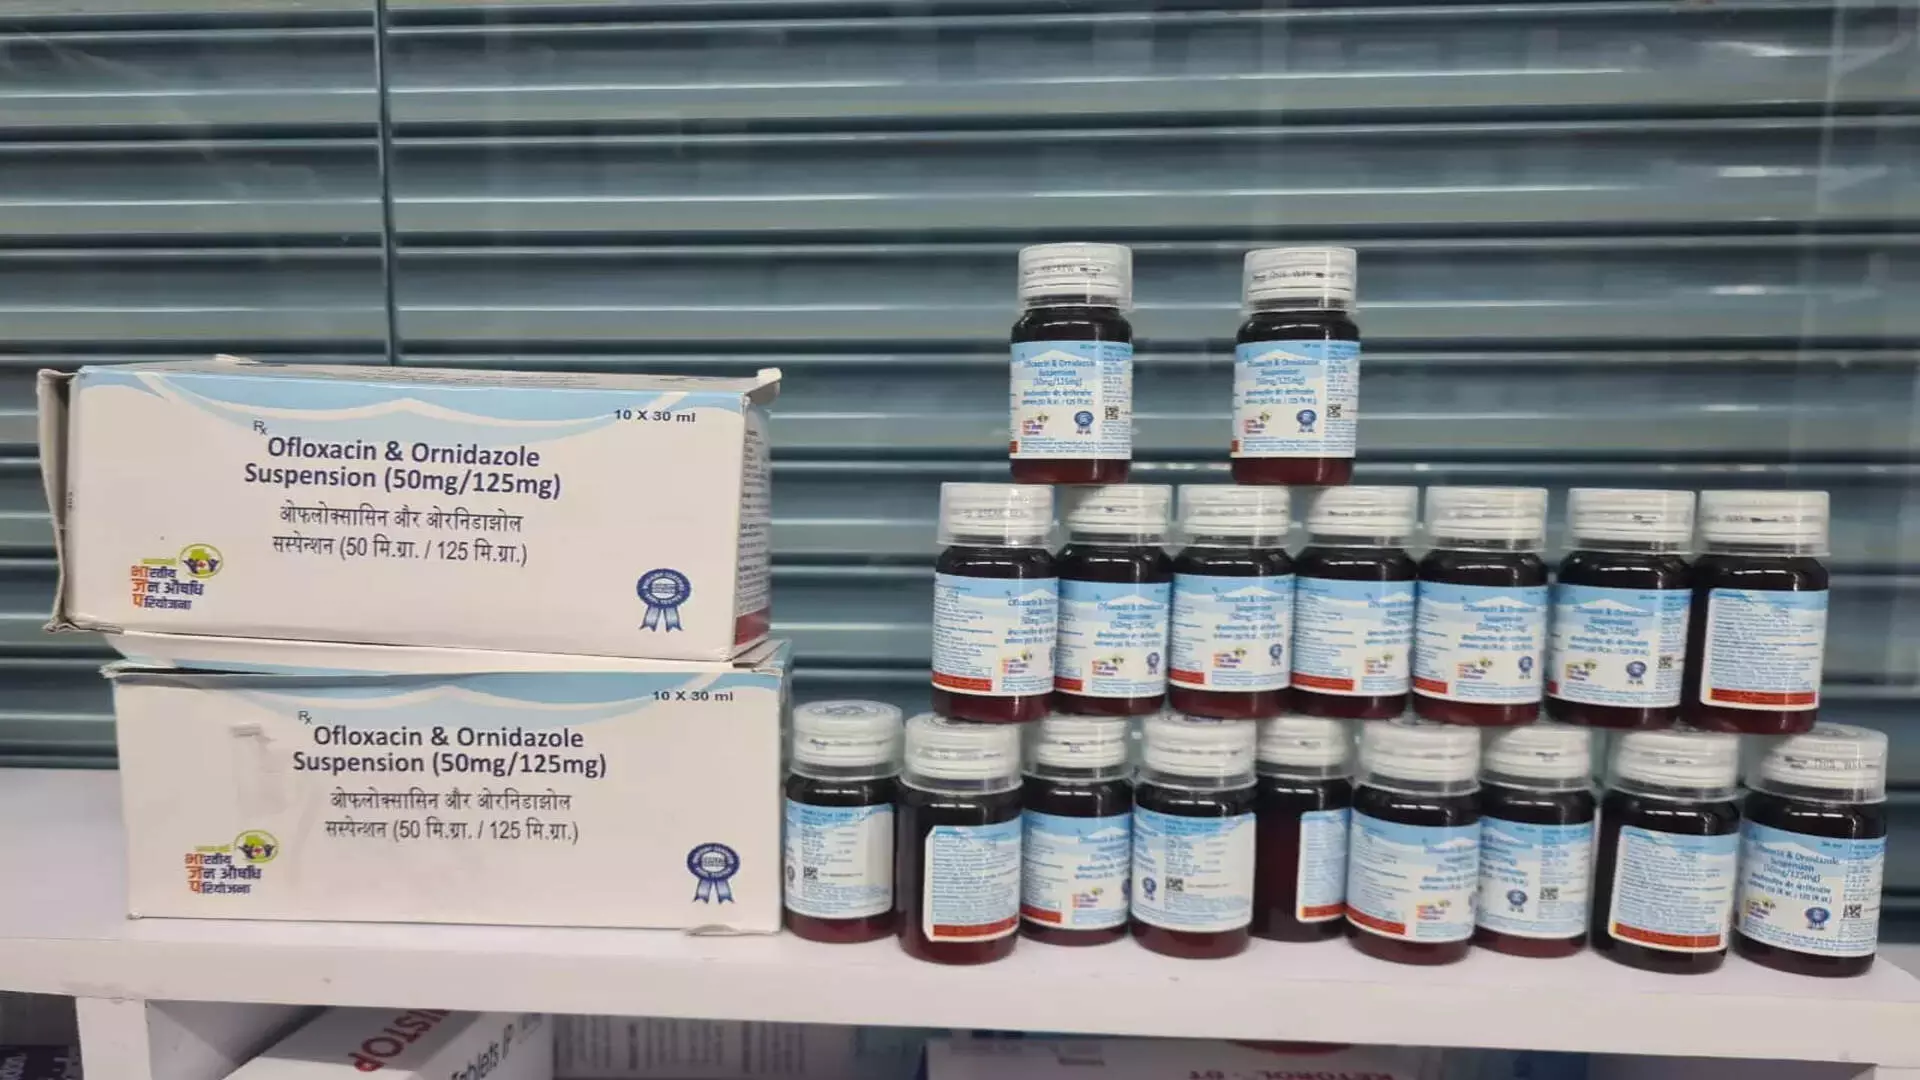 DCA ने सिकंदराबाद में प्रतिबंधित ओफ्लोक्सासिन और ऑर्निडाजोल दवा जब्त की